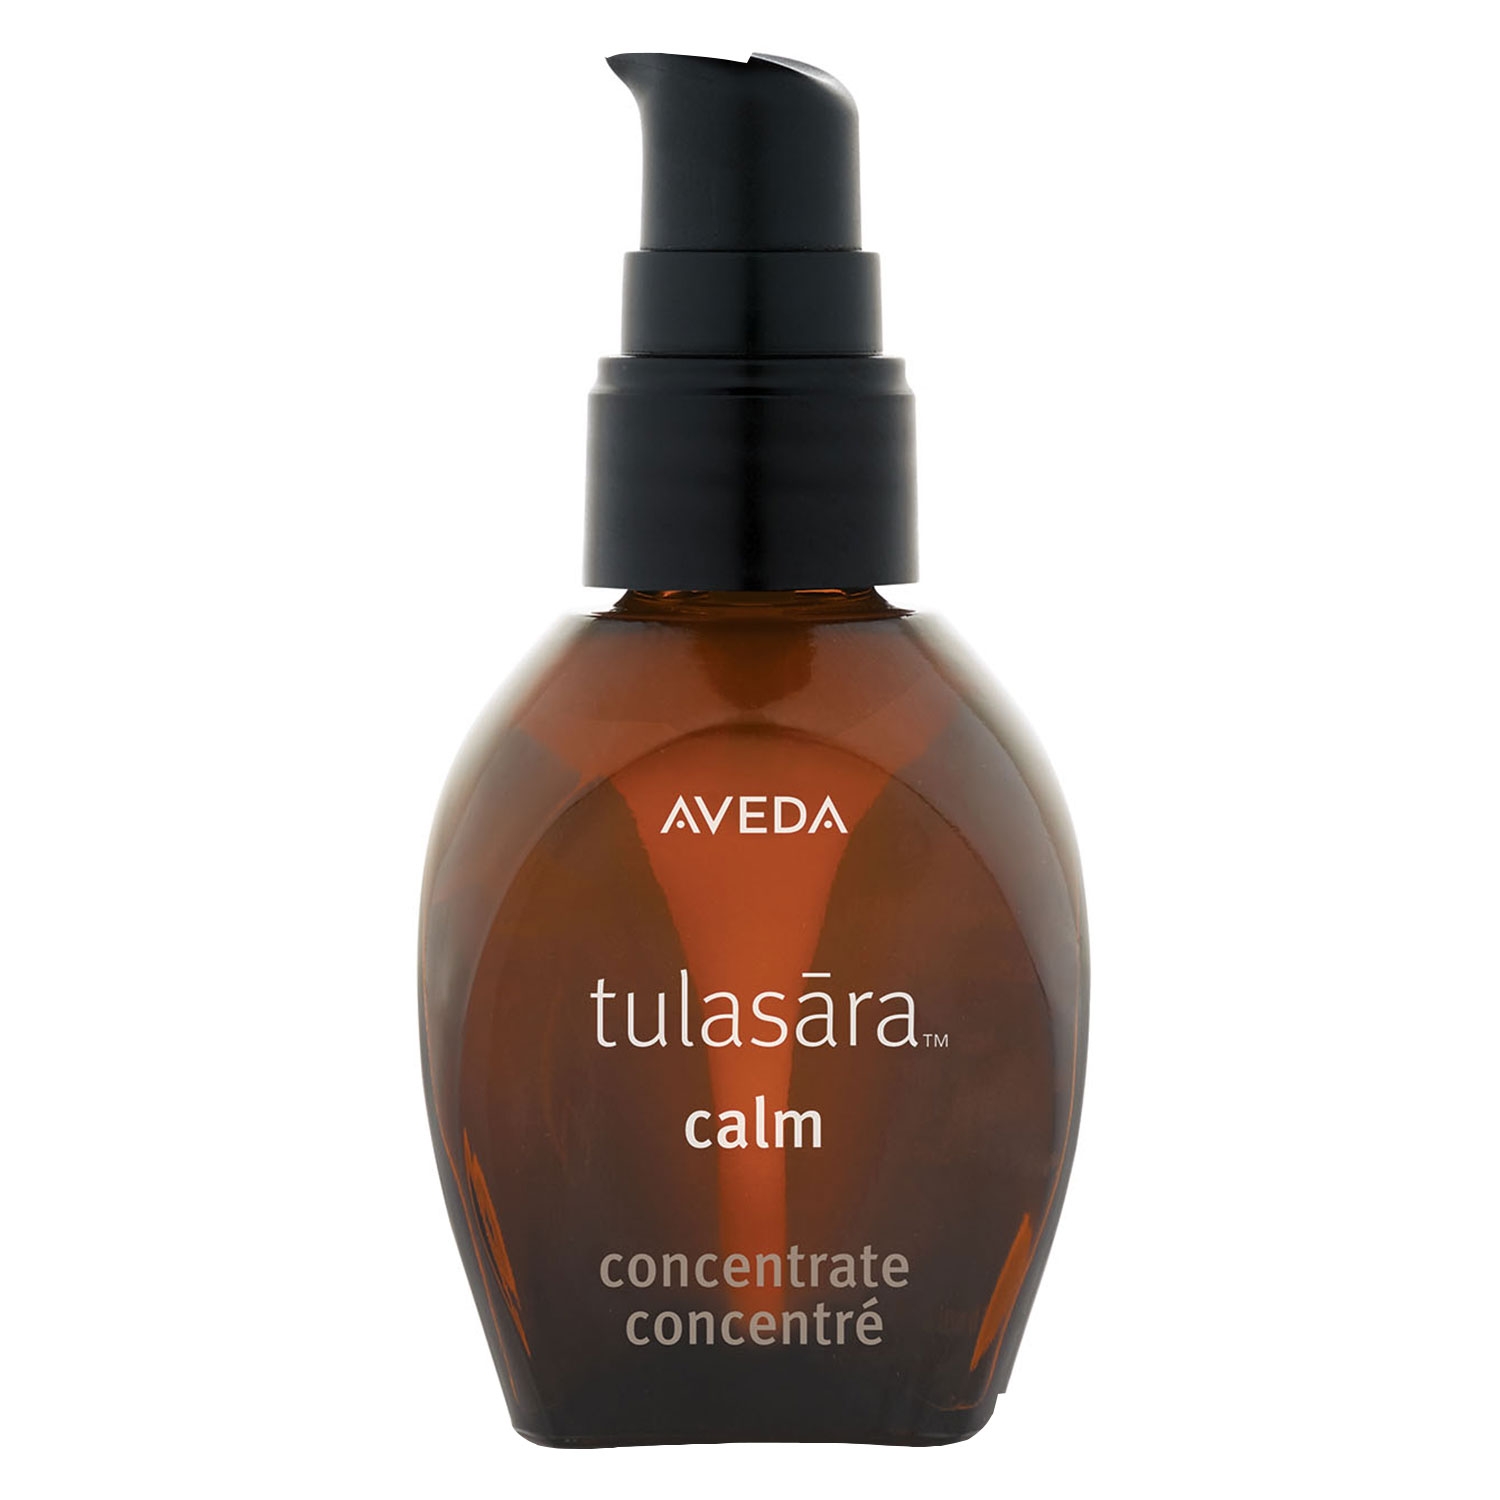 Produktbild von tulasara - calm concentrate